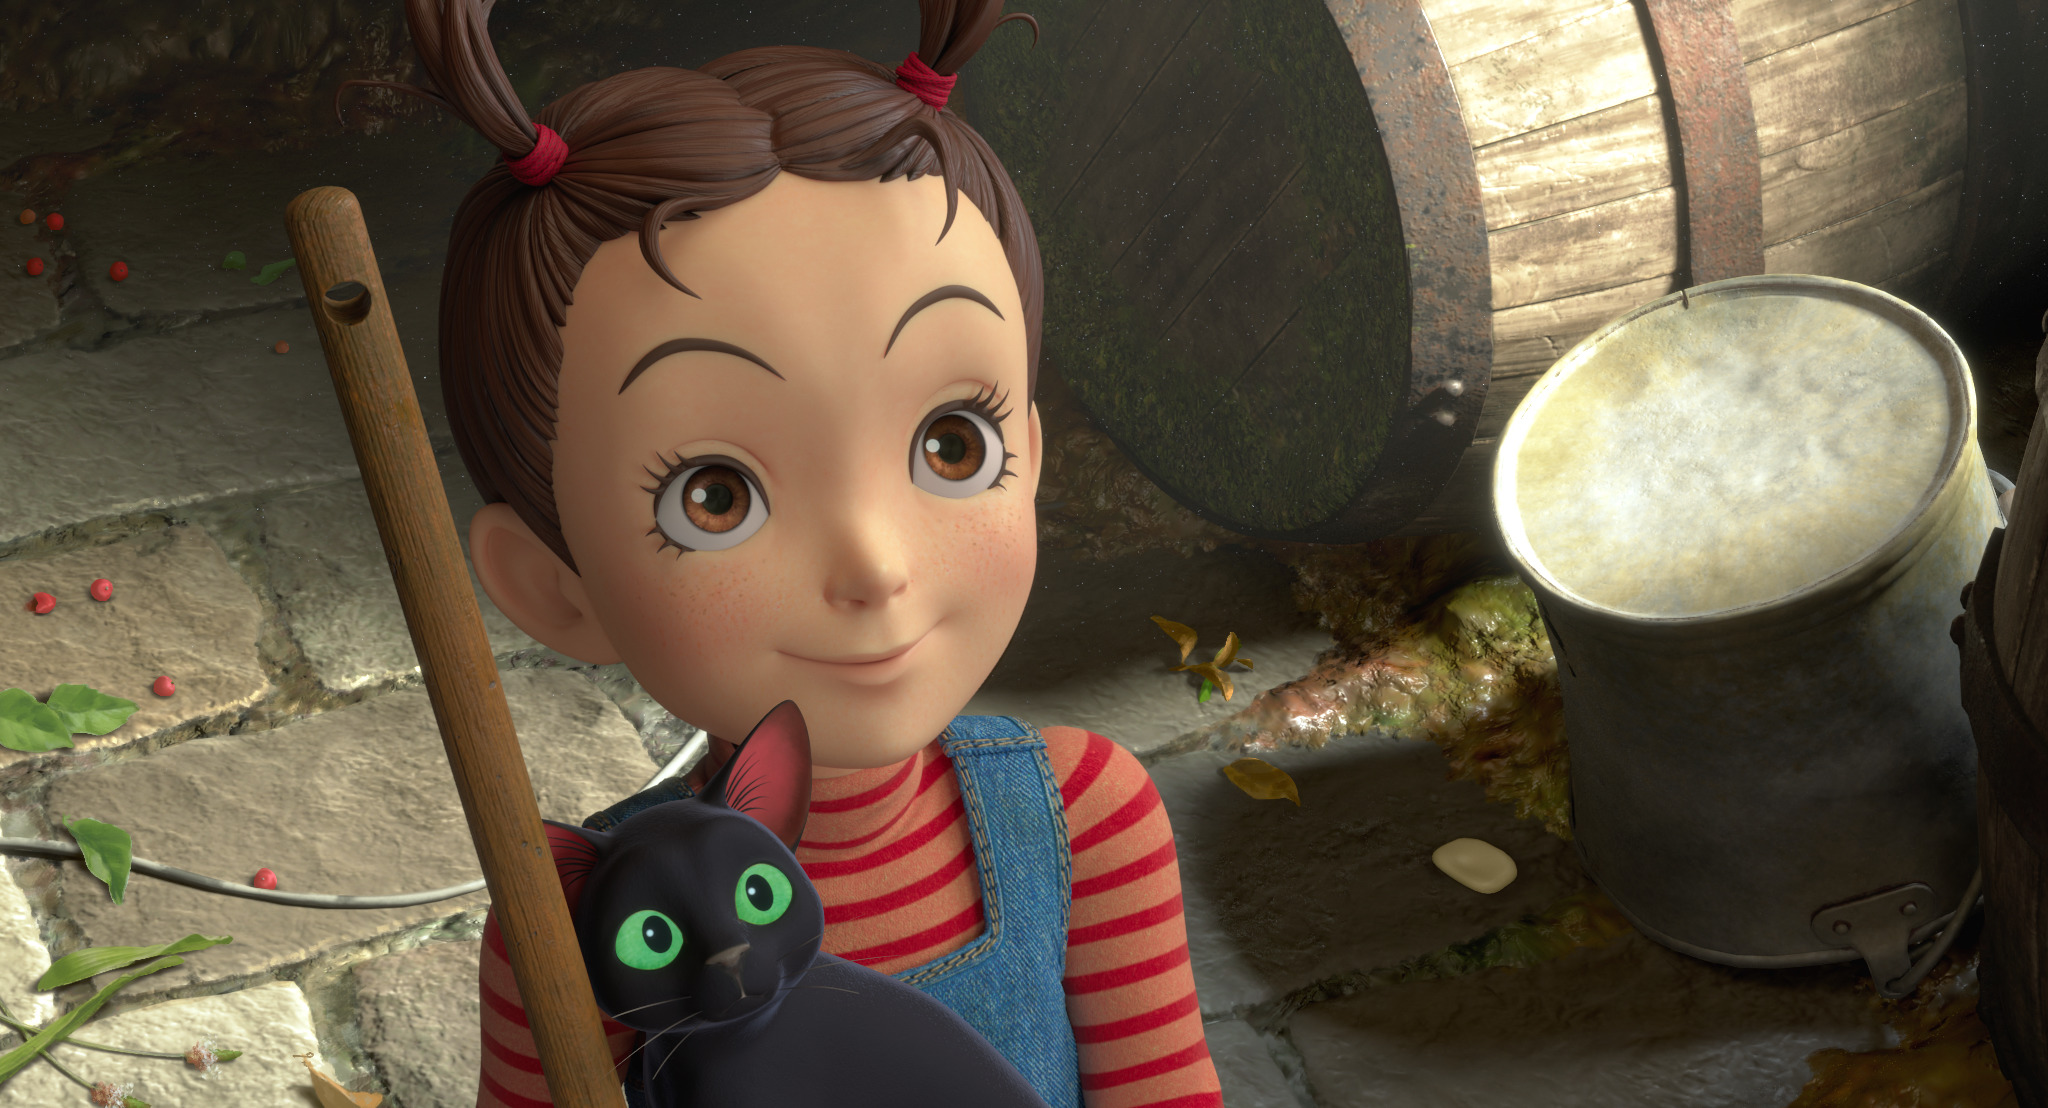 Вышел новый трейлер первого 3D-мультфильма студии Ghibli «Ая и ведьма»